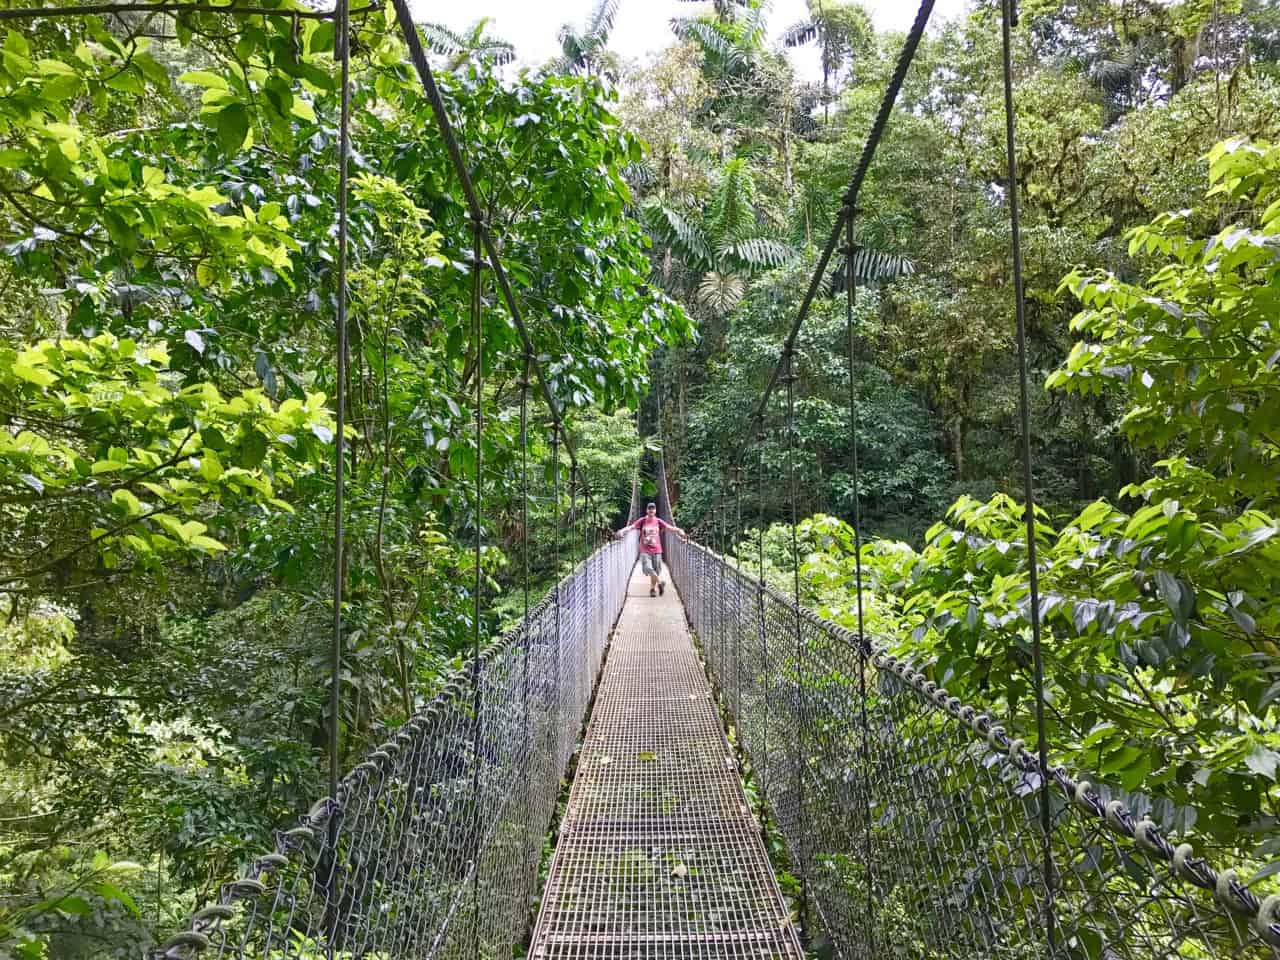  John stojí na visutém mostě nad baldachýnem v parku Mistico v Kostarice.